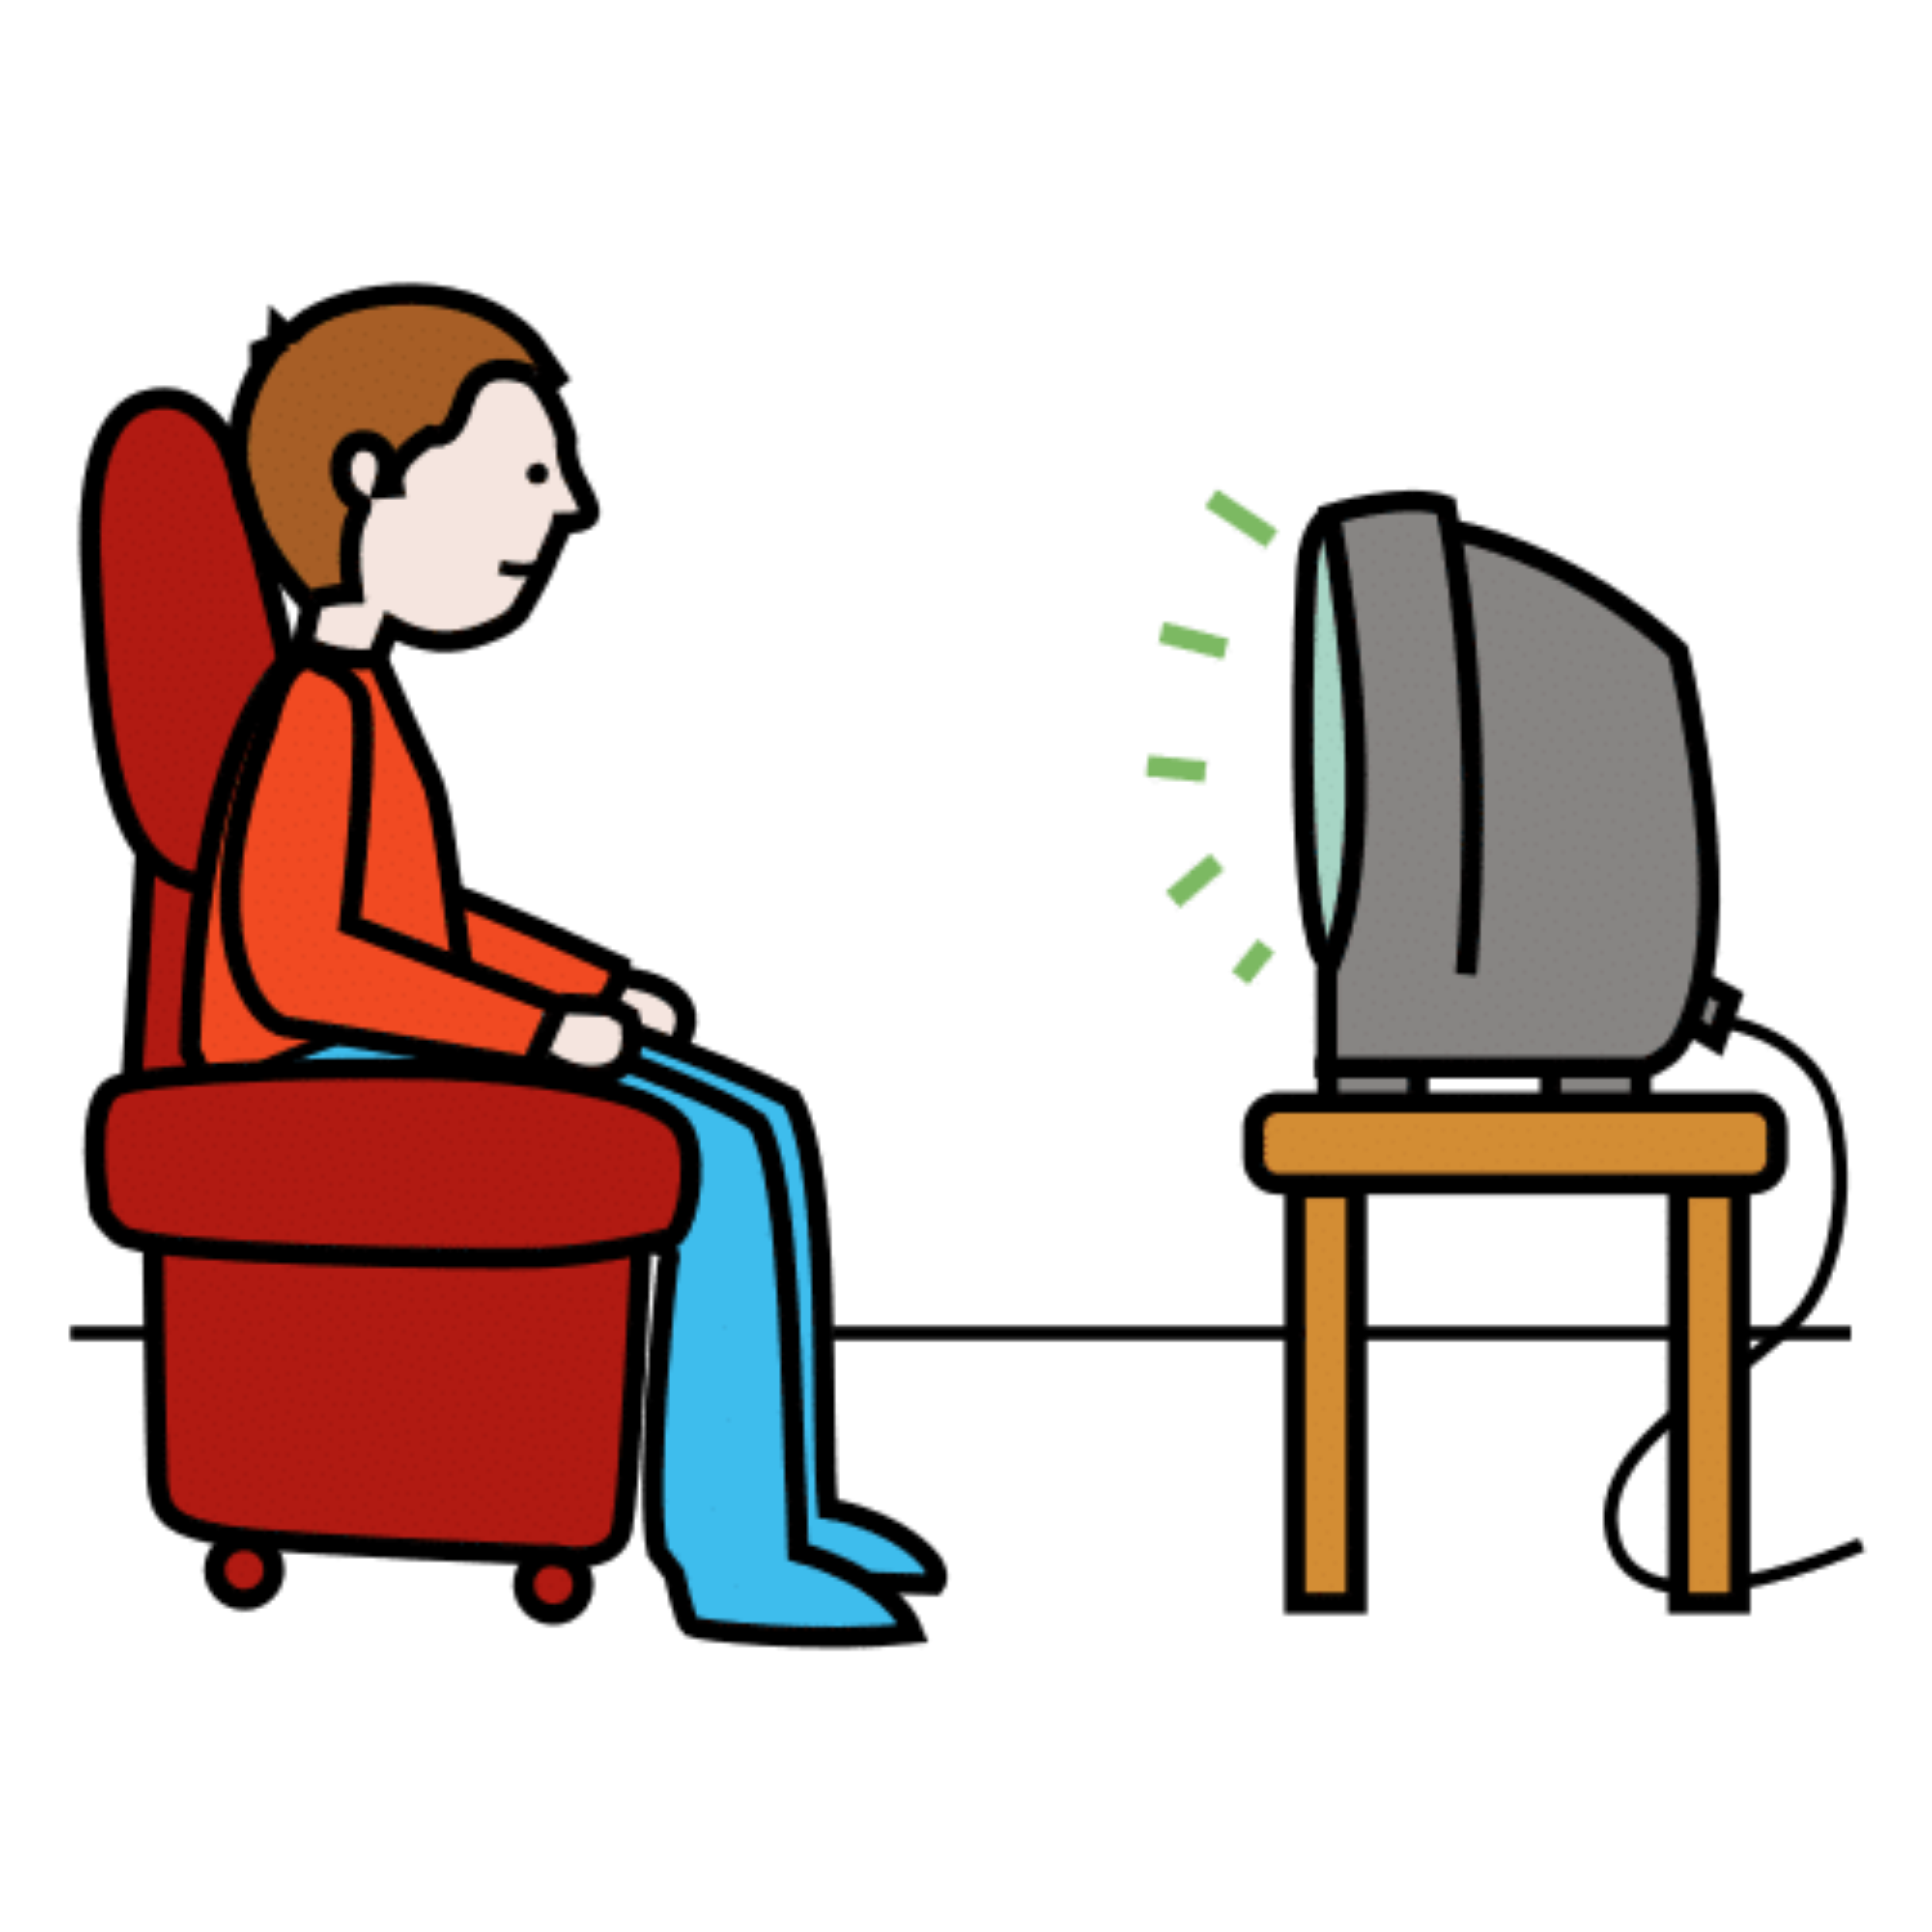 La imagen muestra un personaje viendo la TV